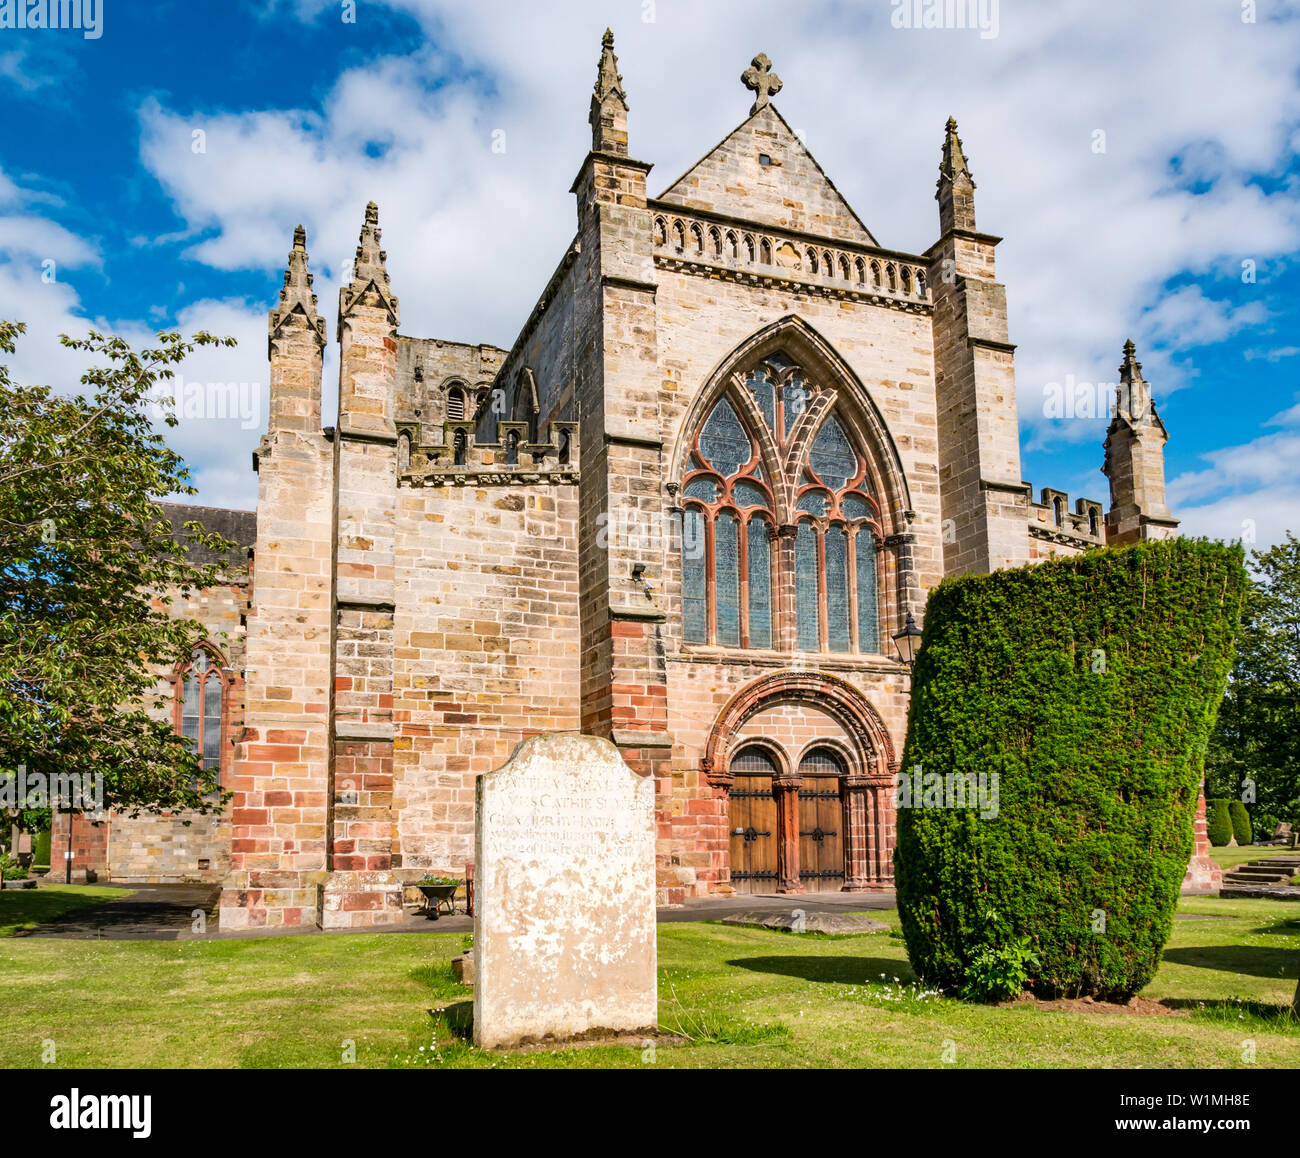 St Mary's Parish Church, Haddington, East Lothian, Scotland, UK Stock Photo